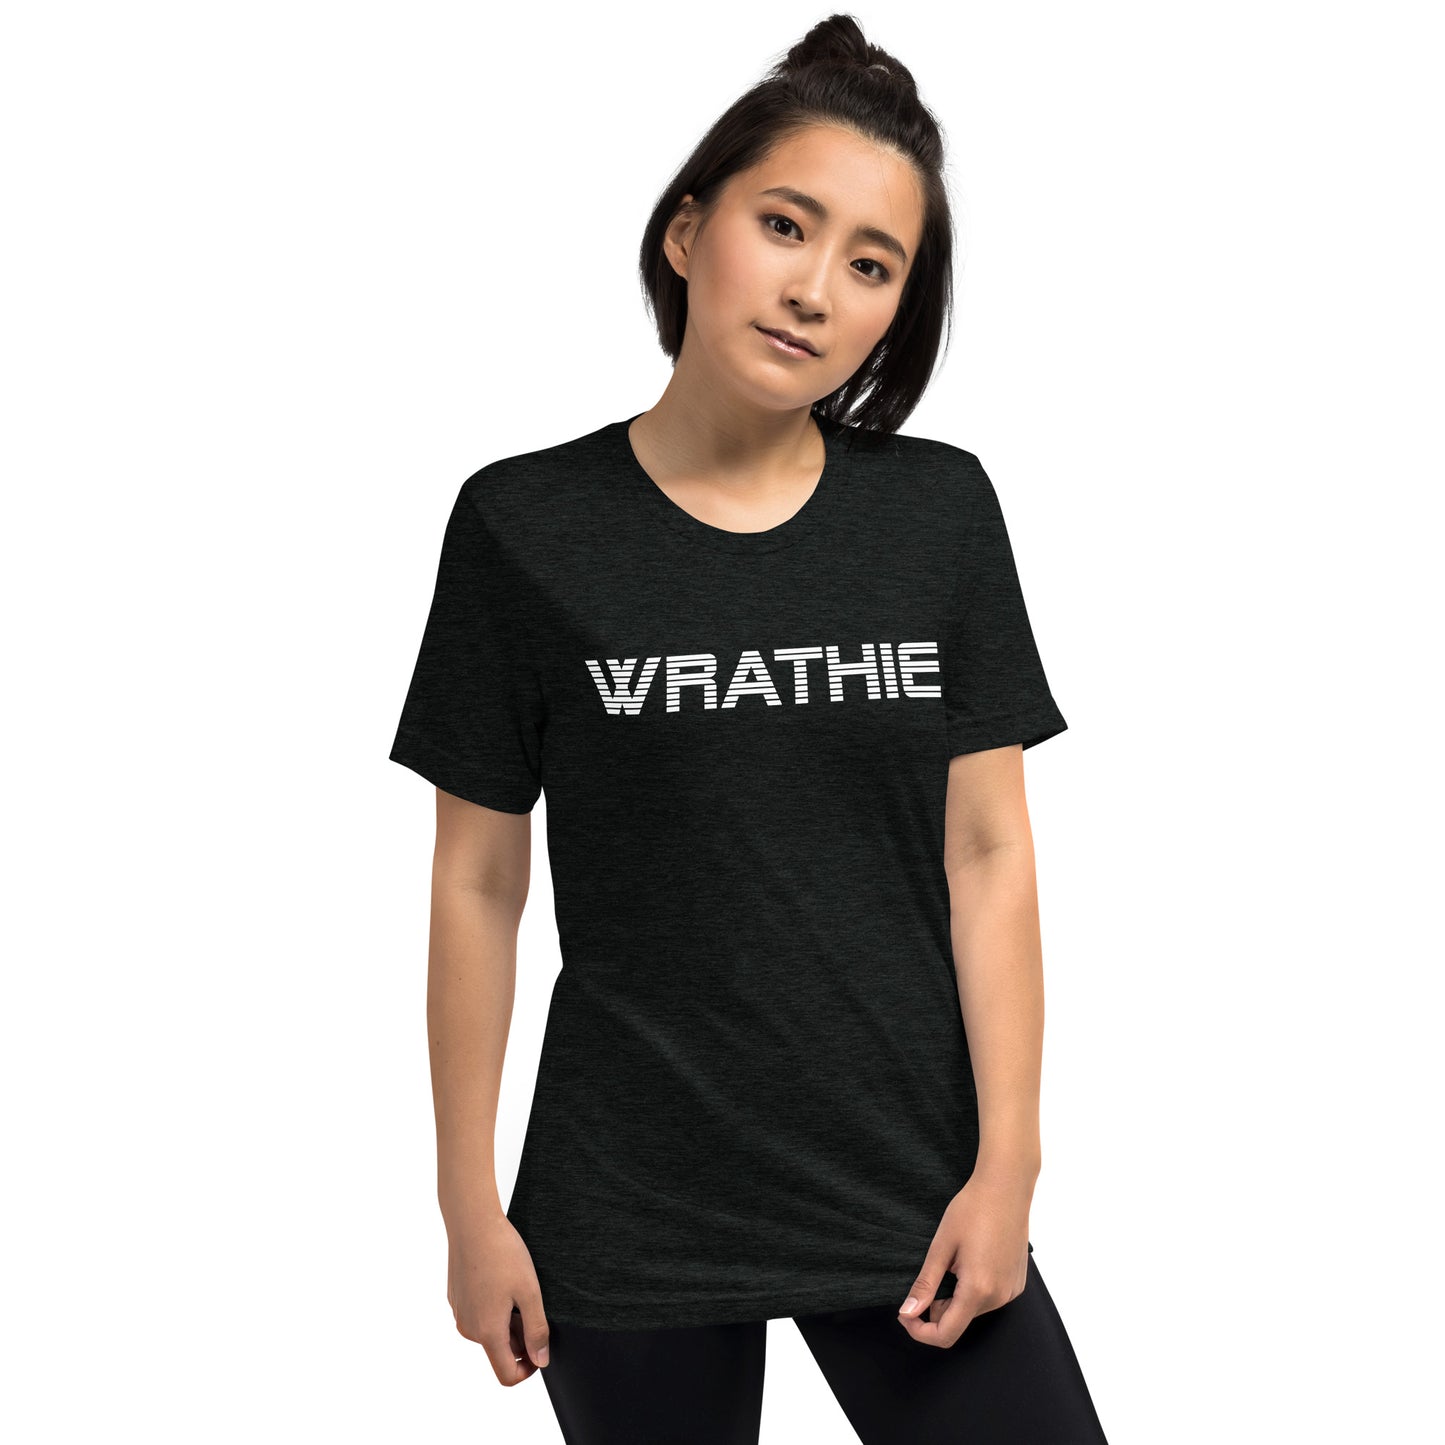 WRATHIE Unisex Short Sleeve T-Shirt